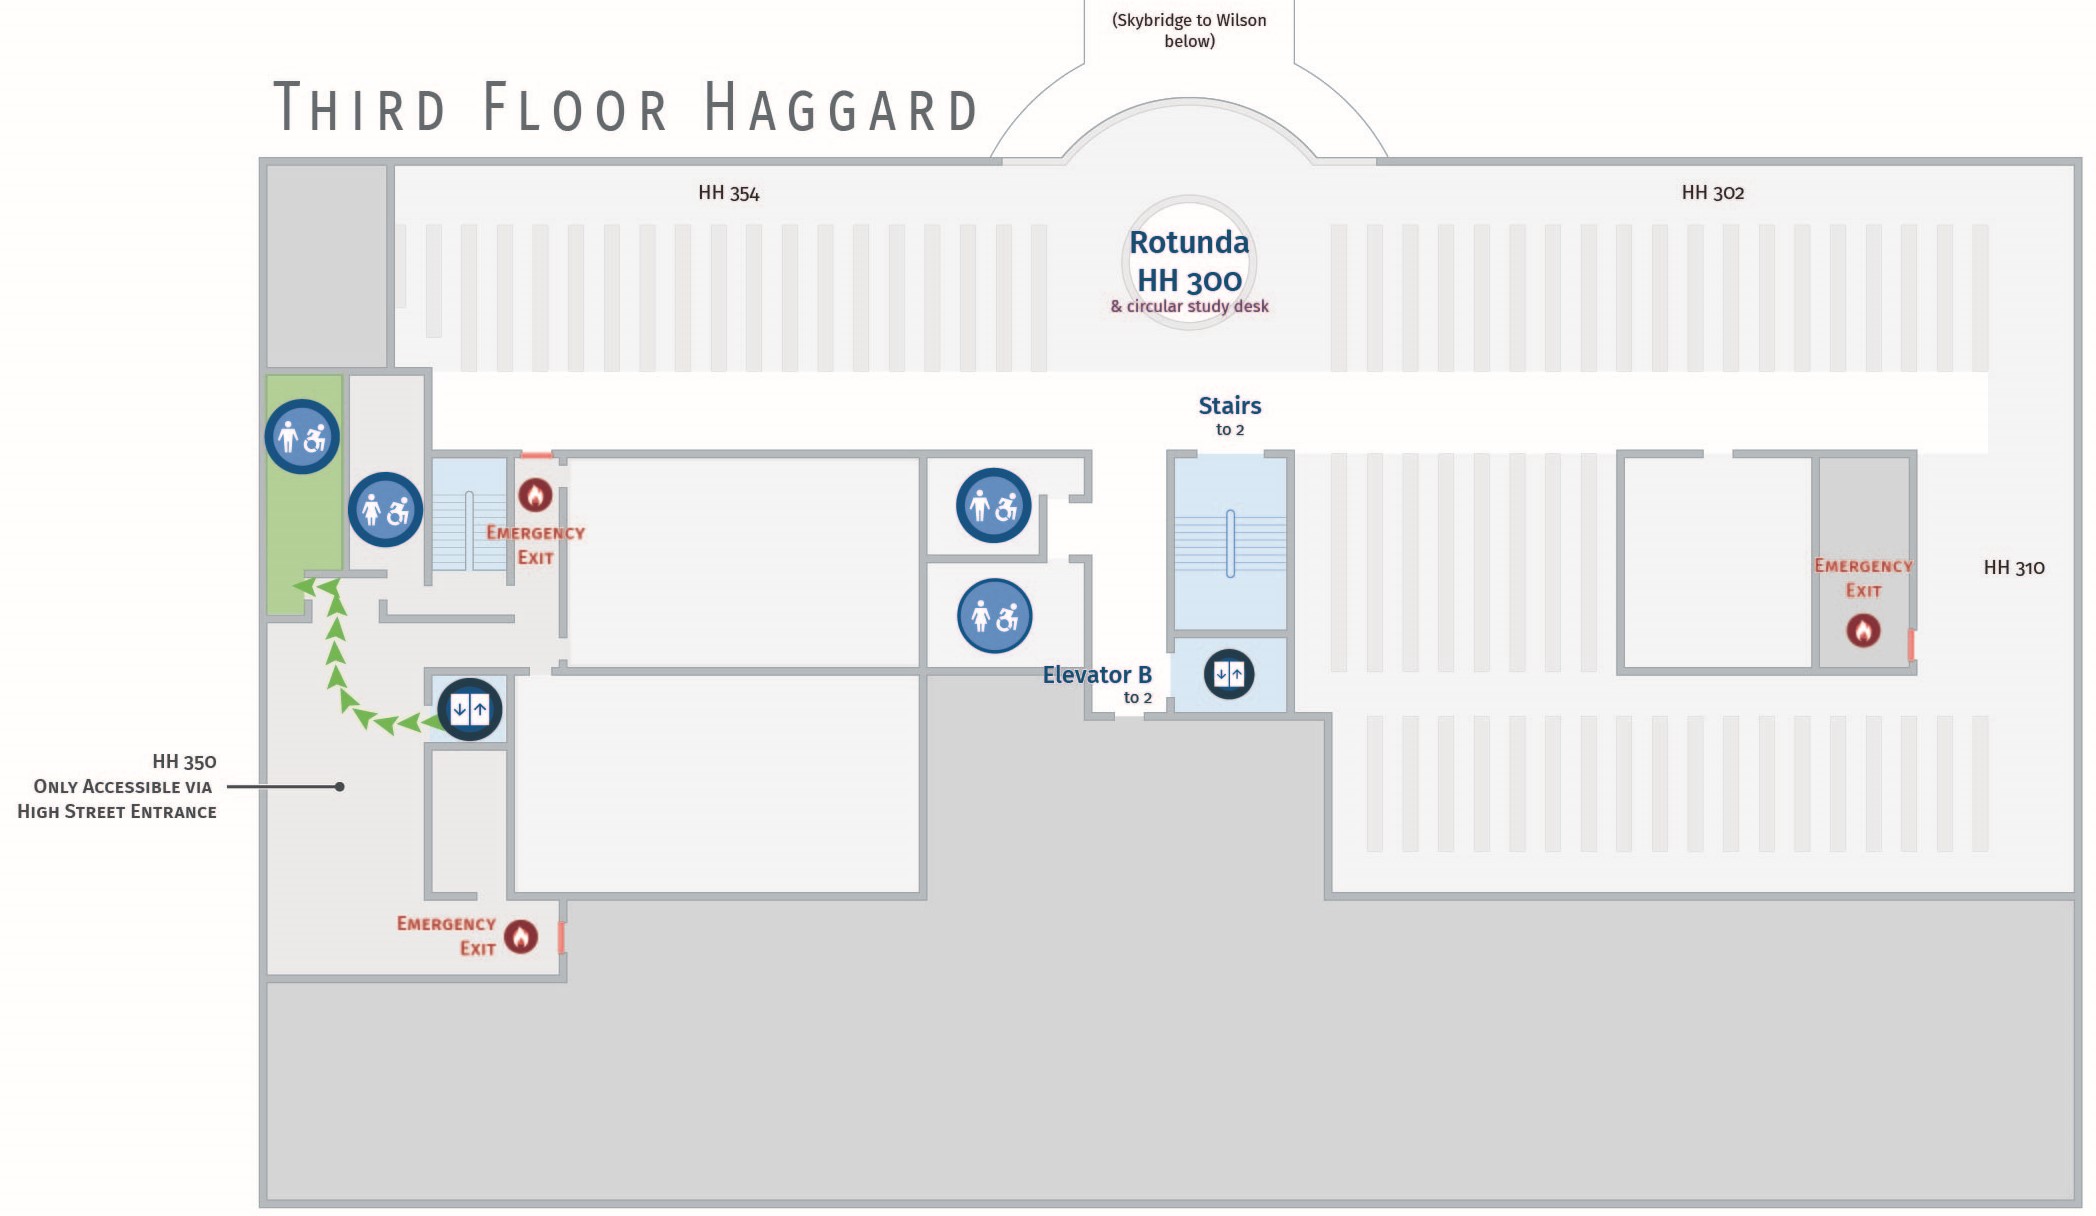 Floor plan, third floor of Haggard with accessible path to men's restroom. Haggard 351.